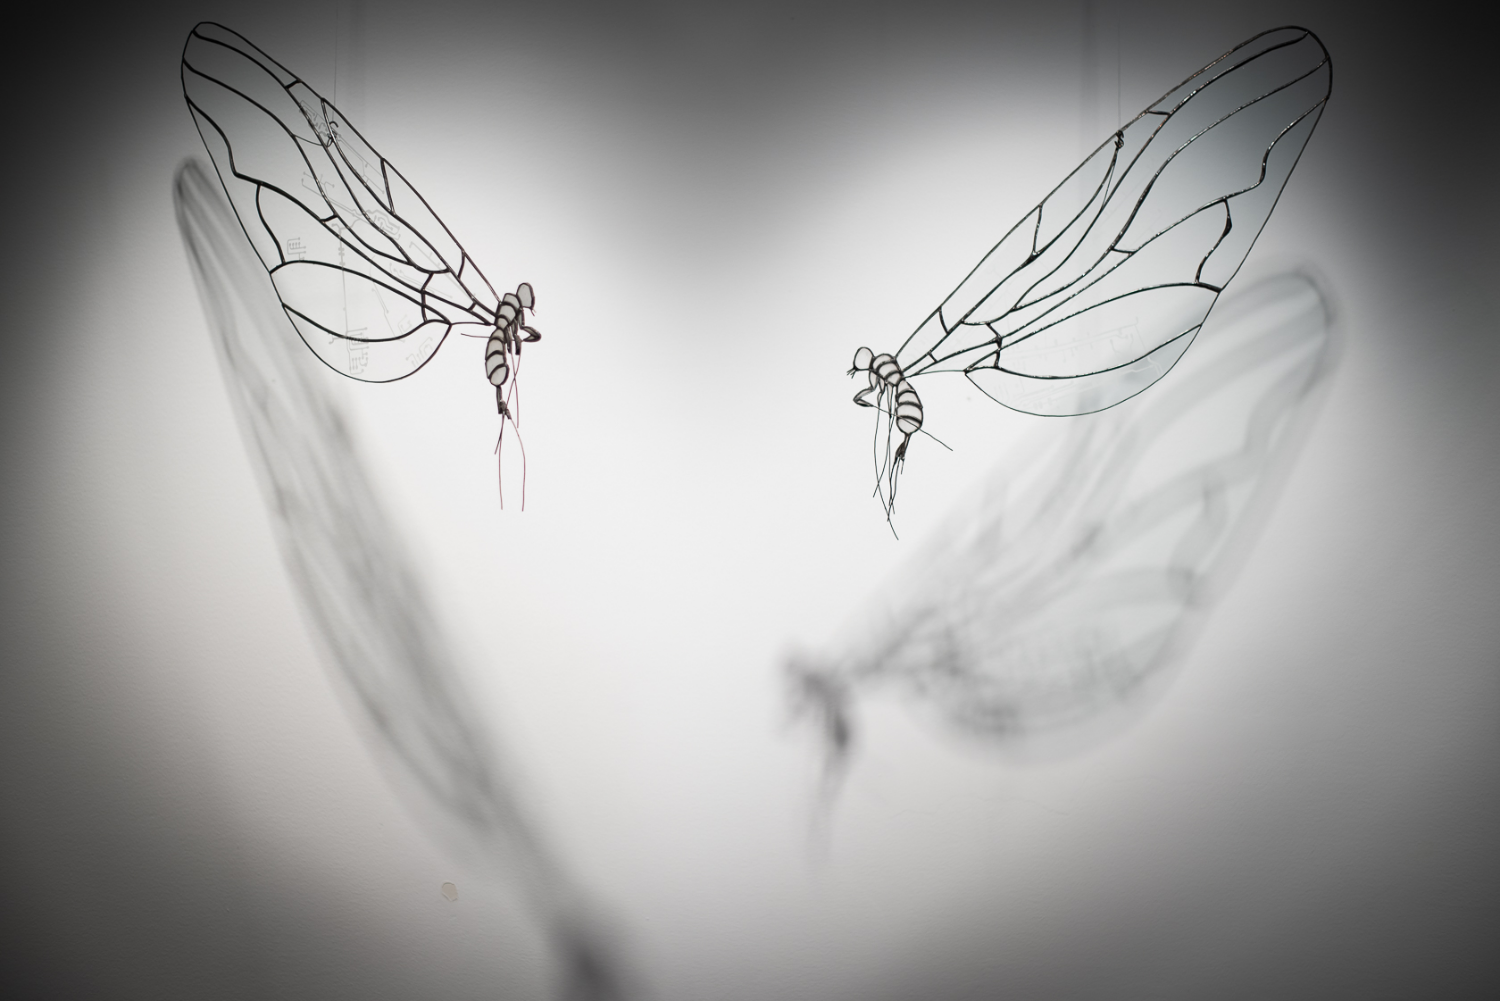 Installation suspendue, vue de deux papillons en vitrail